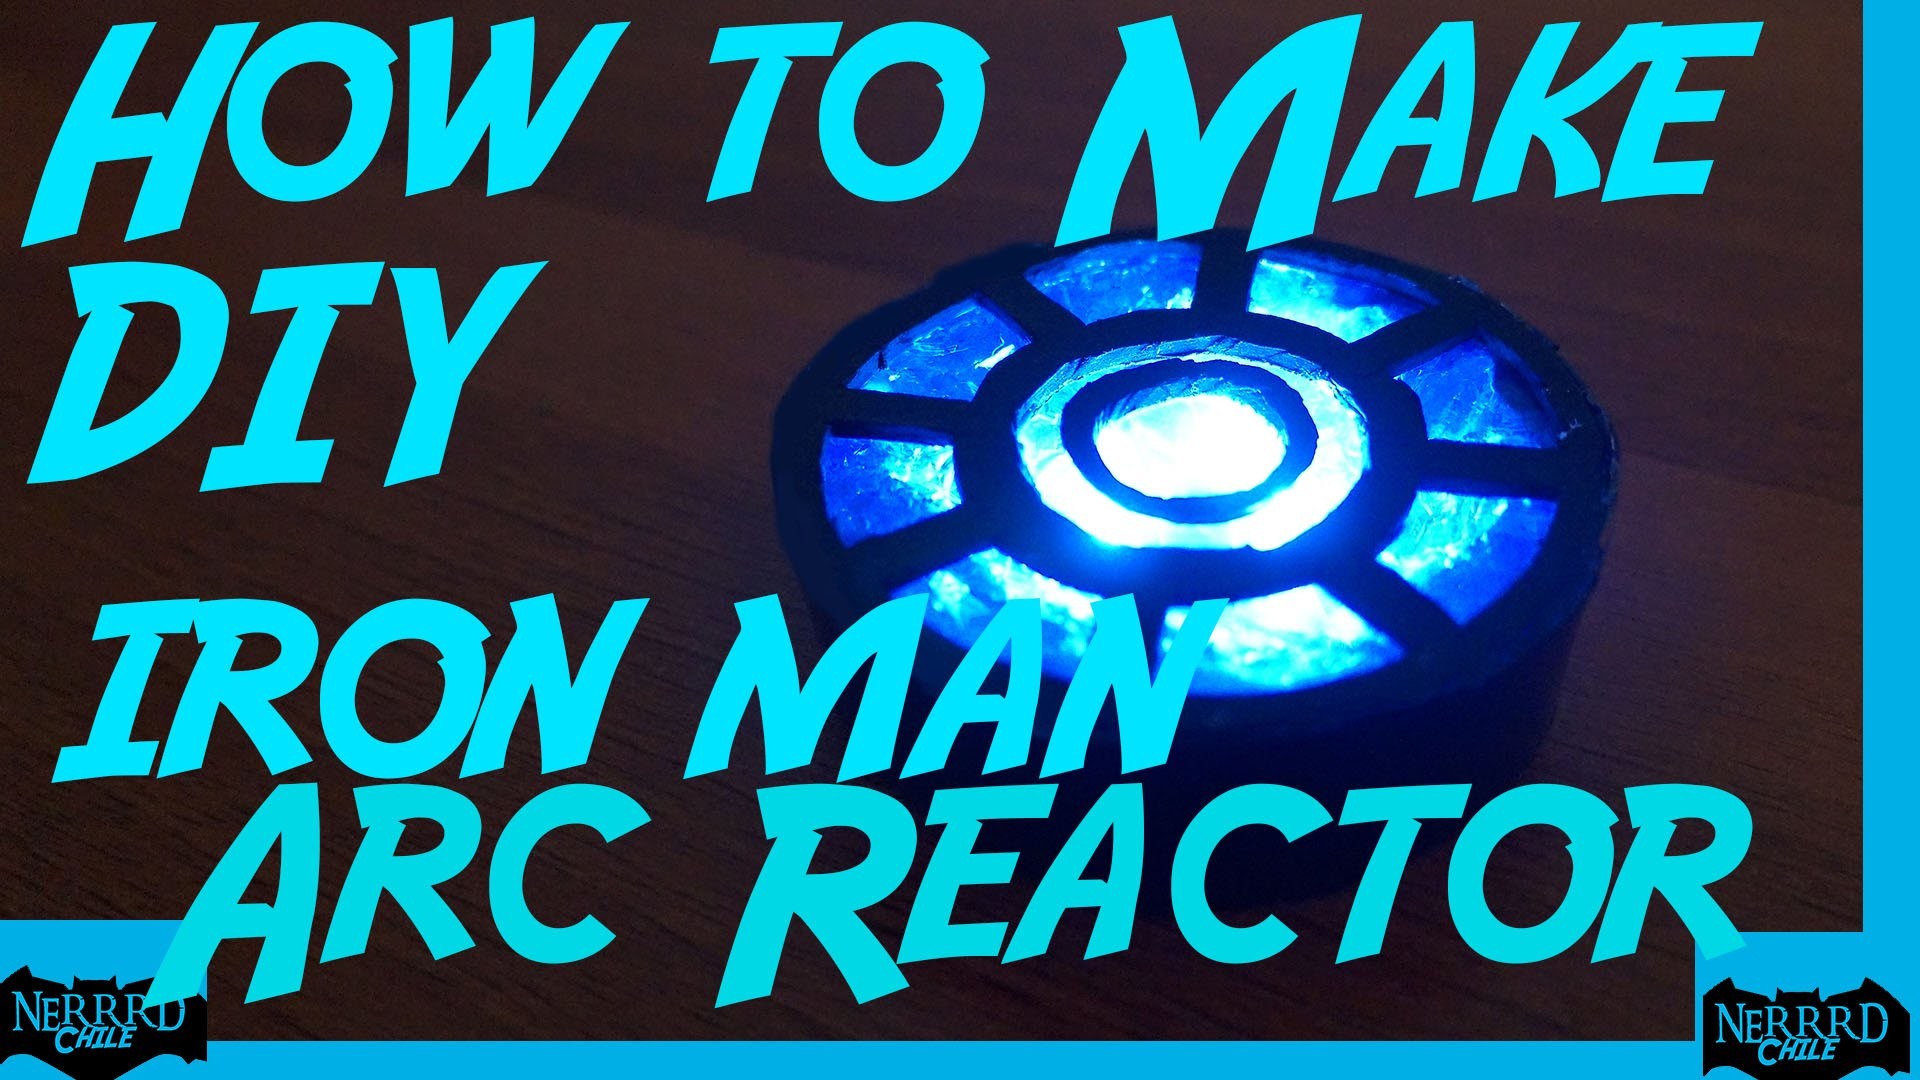 Como Hacer el Arc Reactor de Iron Man DIY NeRRRd 002